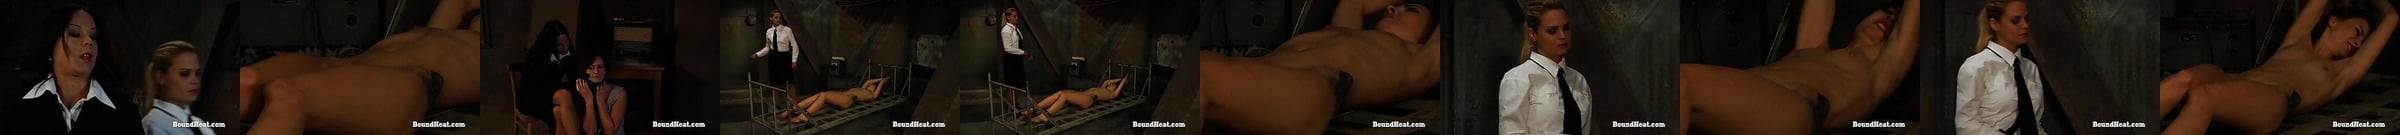 Featured Bound Heat Porn Videos 2 Xhamster